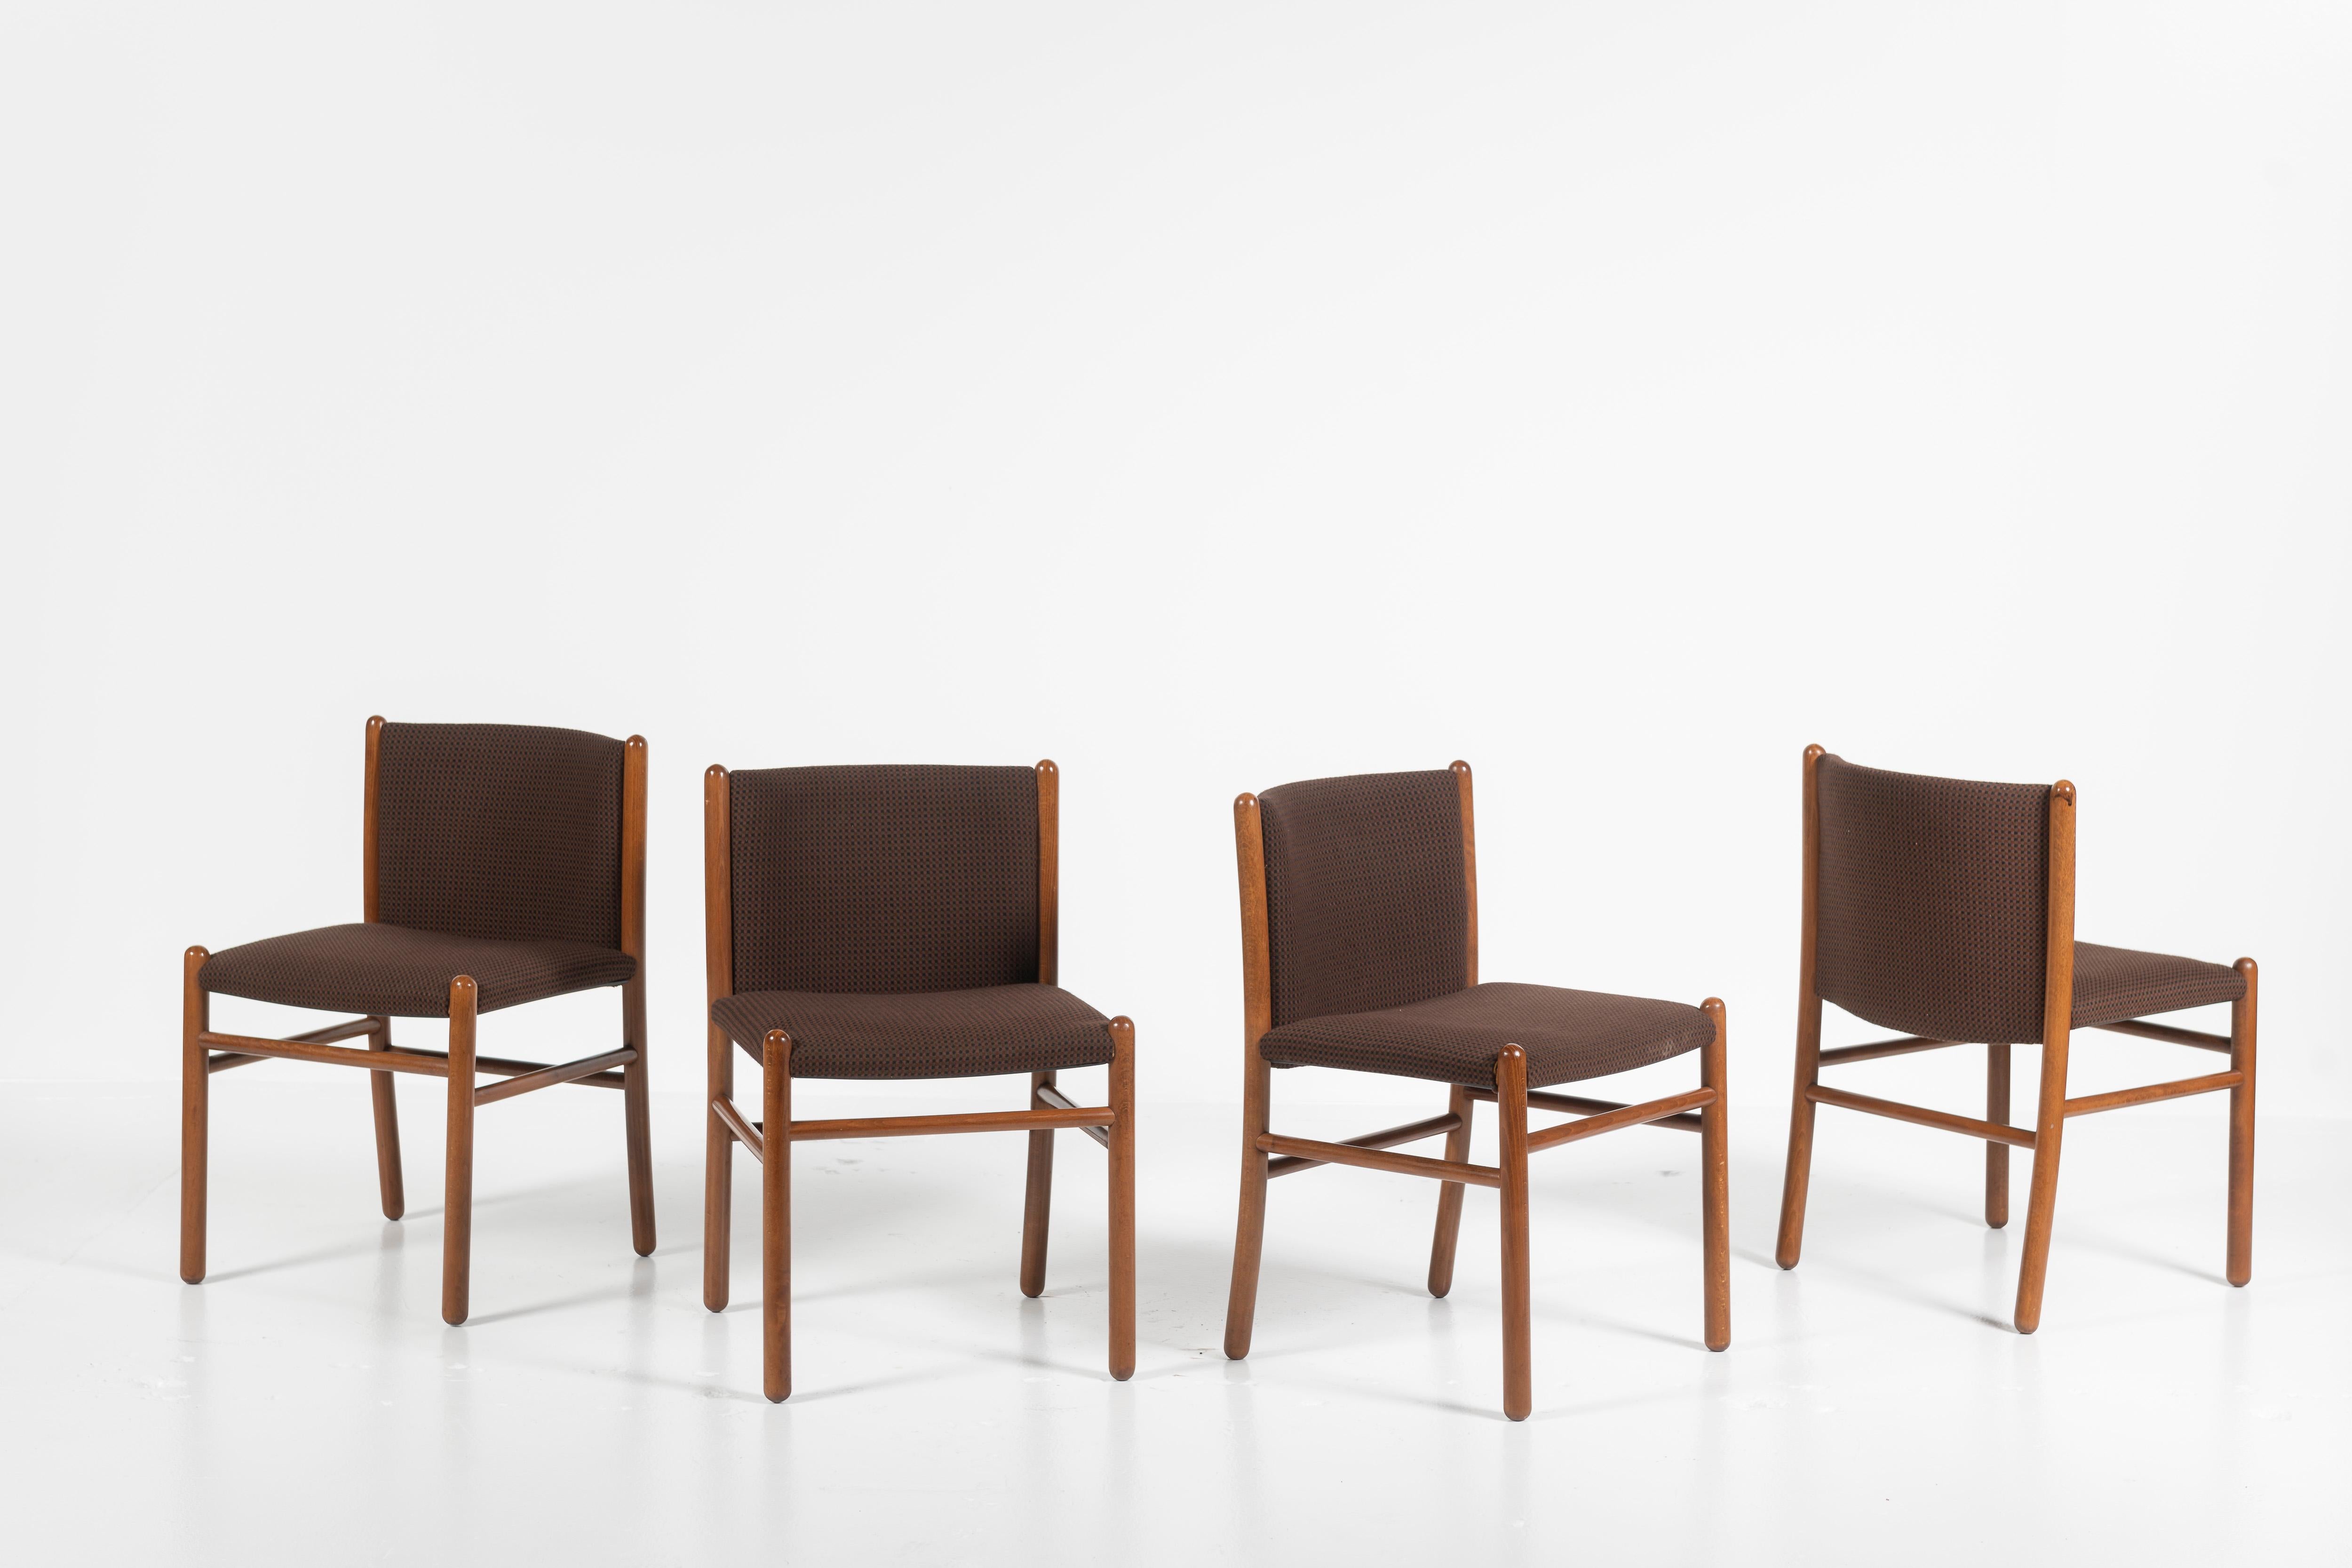 Diese Esszimmerstühle, die als Vierer-Set verkauft werden, wurden von Gianfranco Frattini für Lema S.P.A., Italien, entworfen und sind in gutem Zustand, mit einigen Kratzern an den Beinen. Die Stühle haben die ursprüngliche Polsterung, obwohl eine